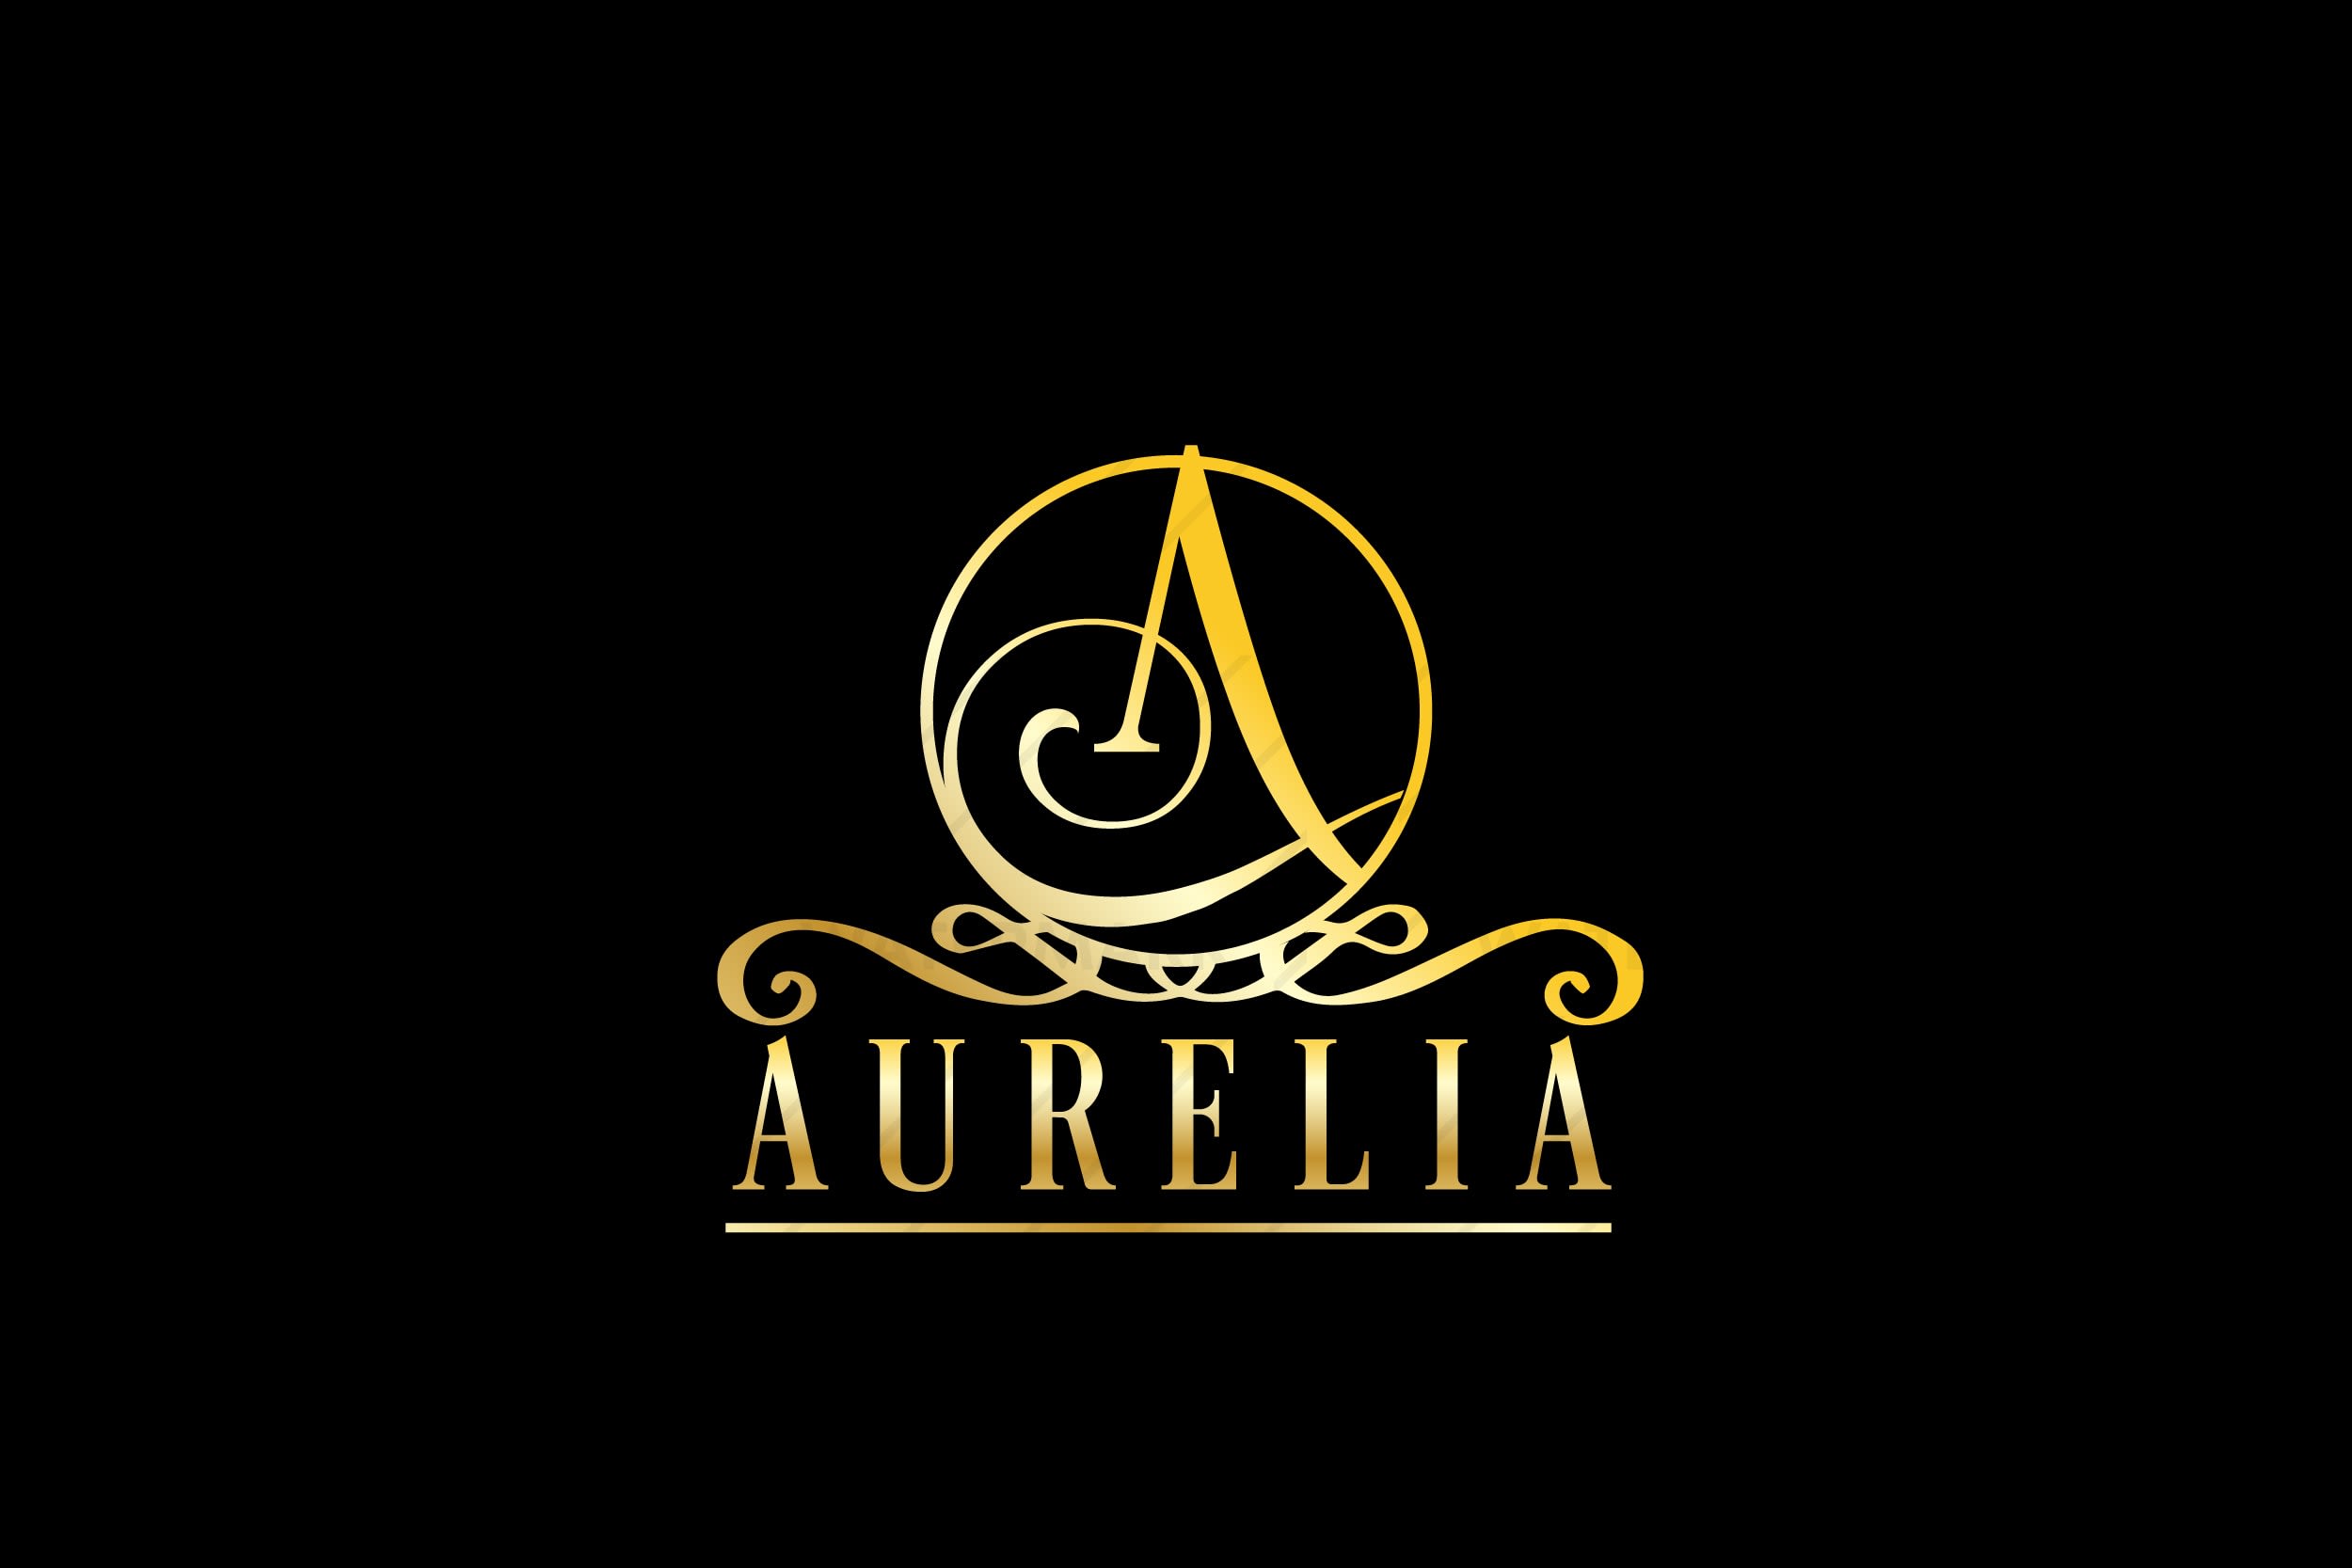 Aurelia - Aurelia added a new photo.